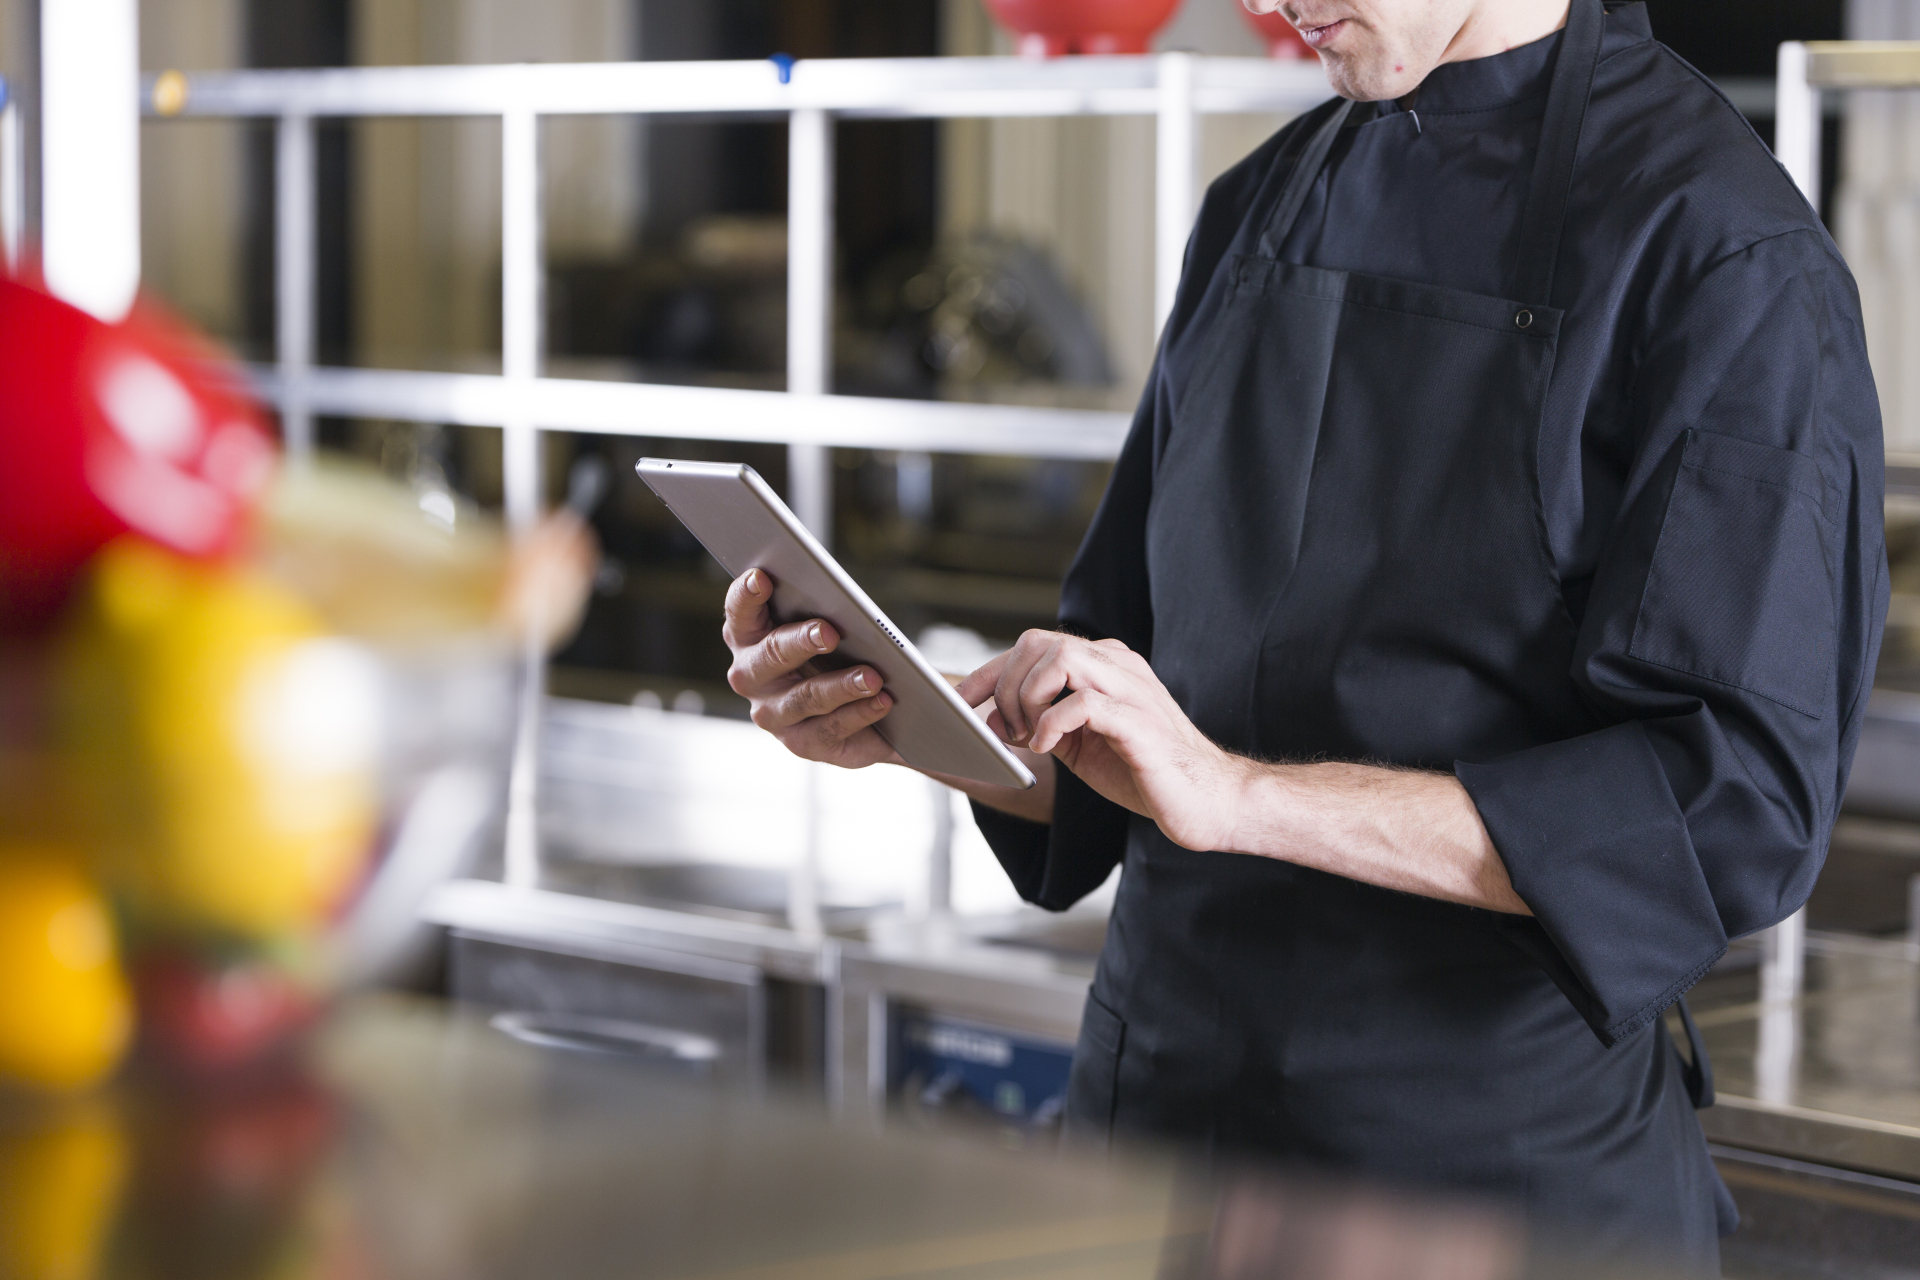 KPI управляющего рестораном: как установить и отслеживать показатели эффективности?